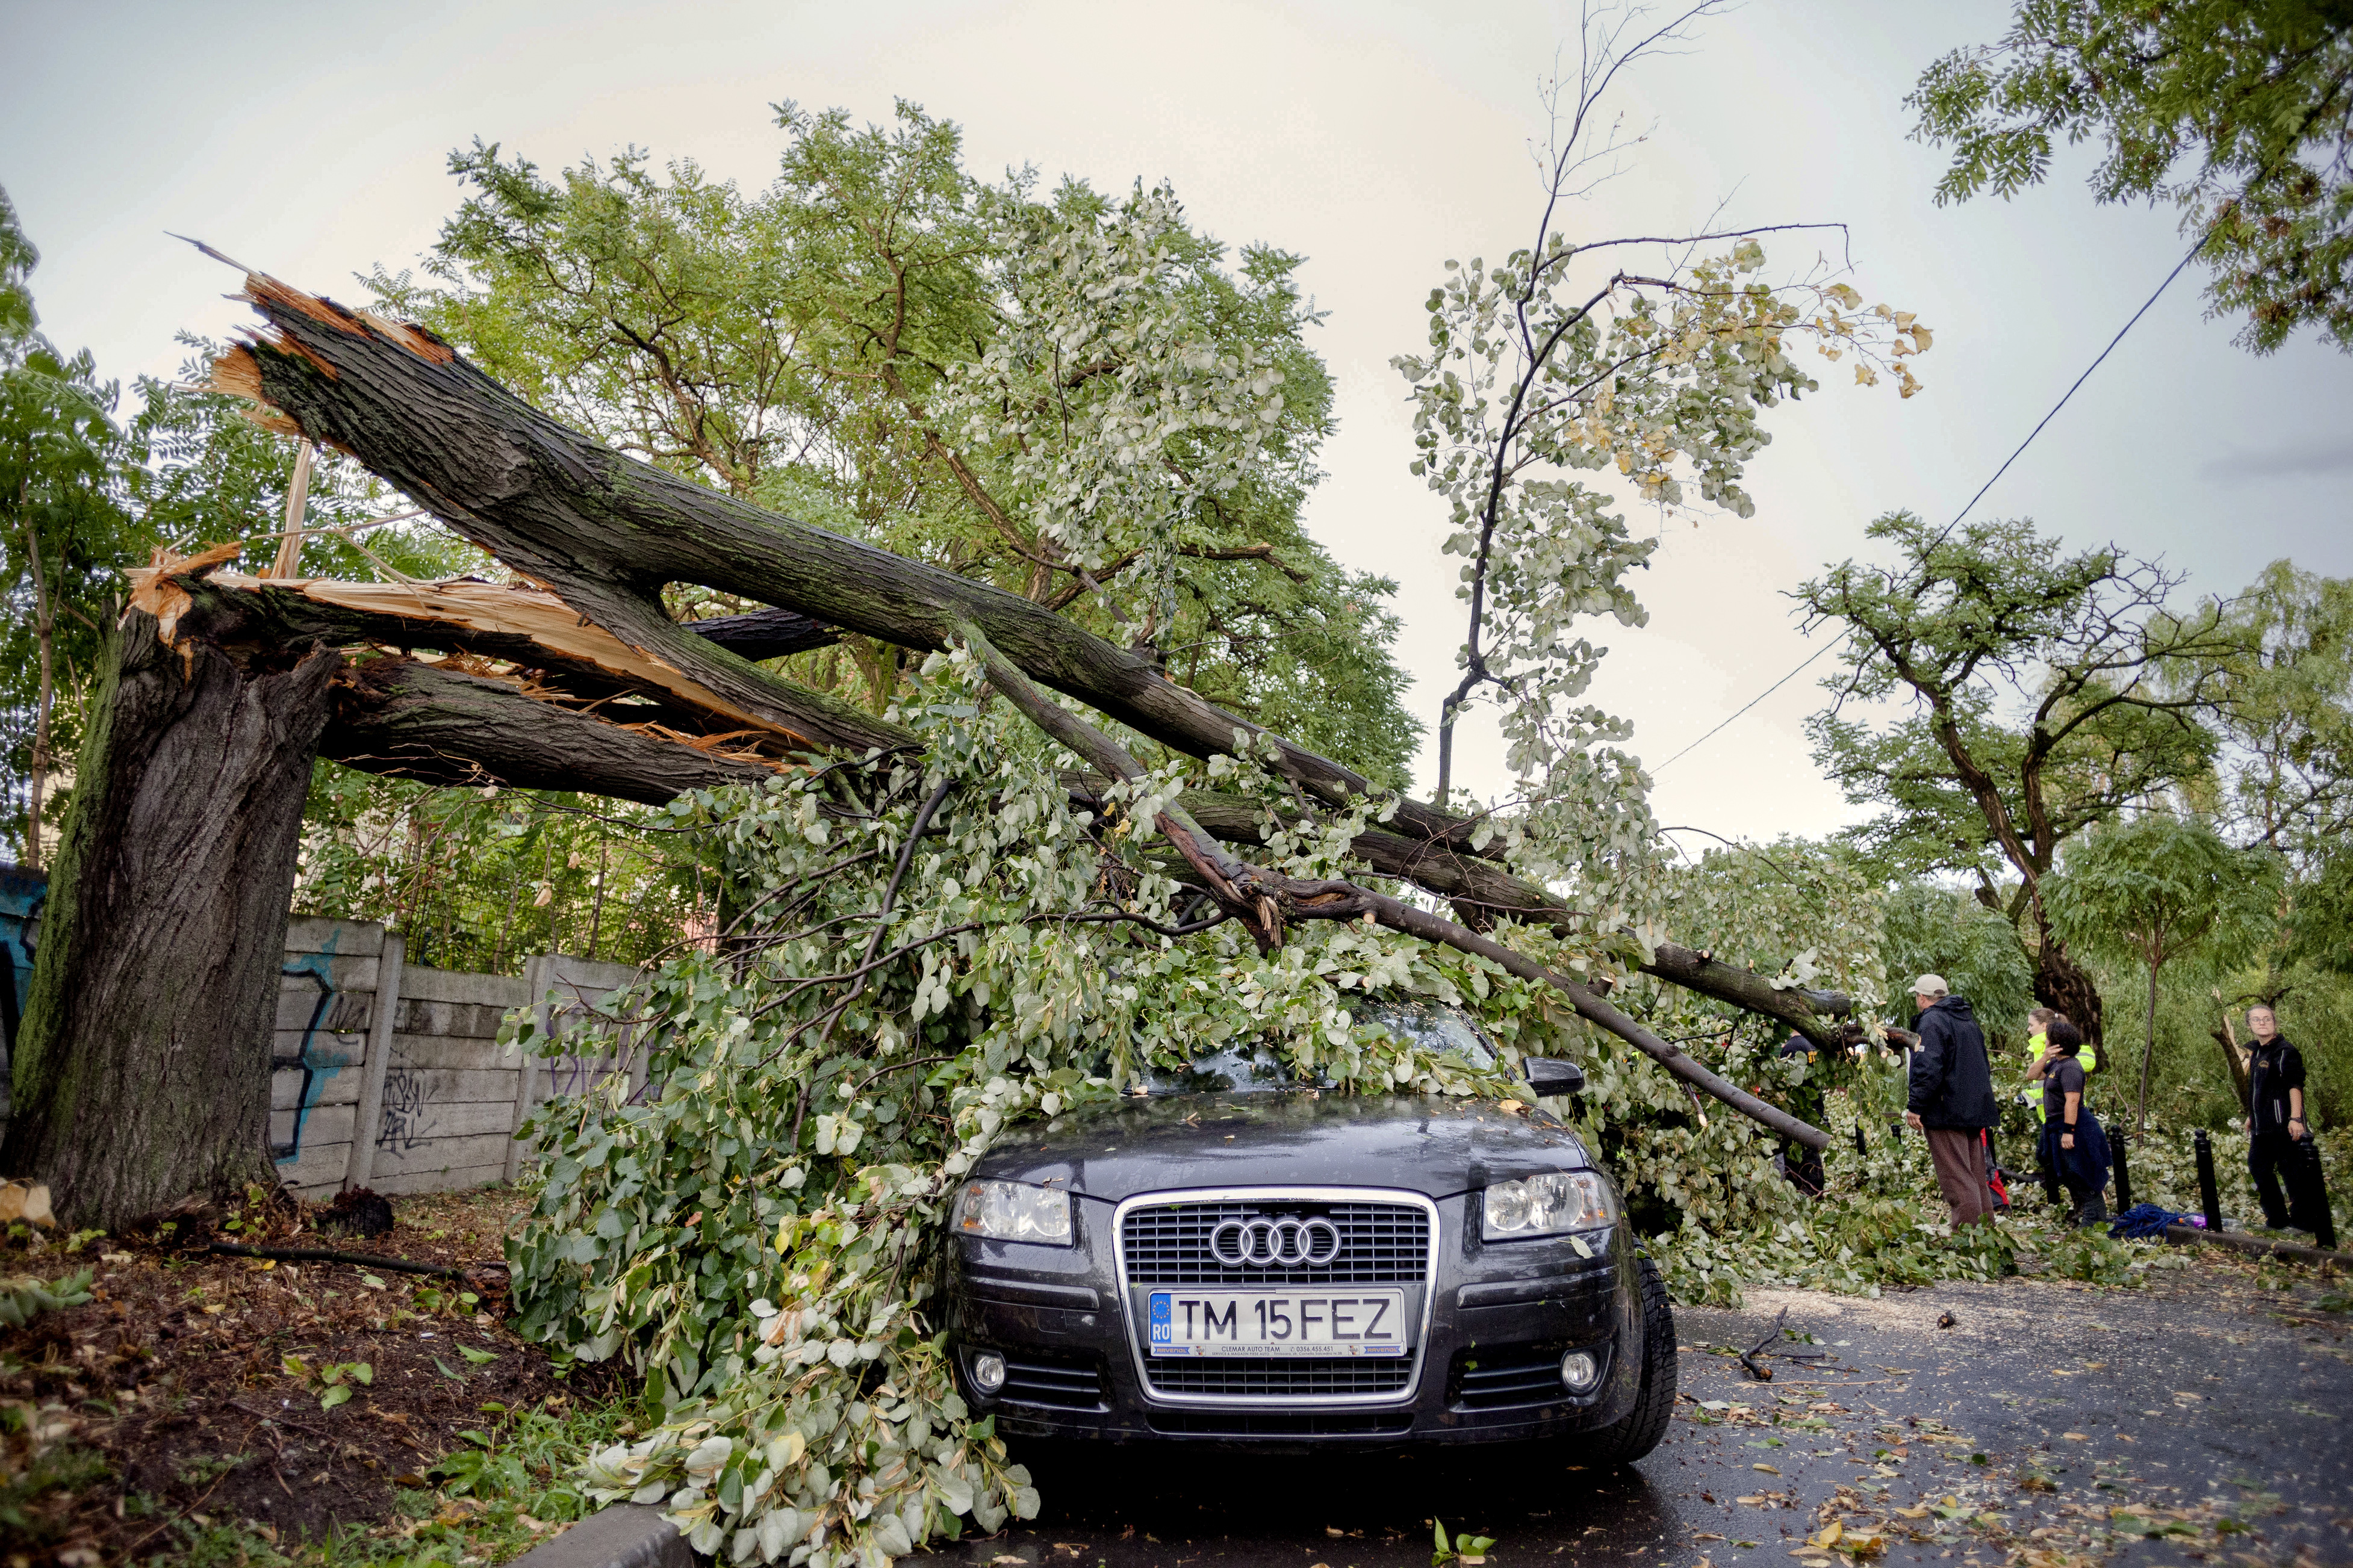 Буря събори дърво върху кола в Тимишоара